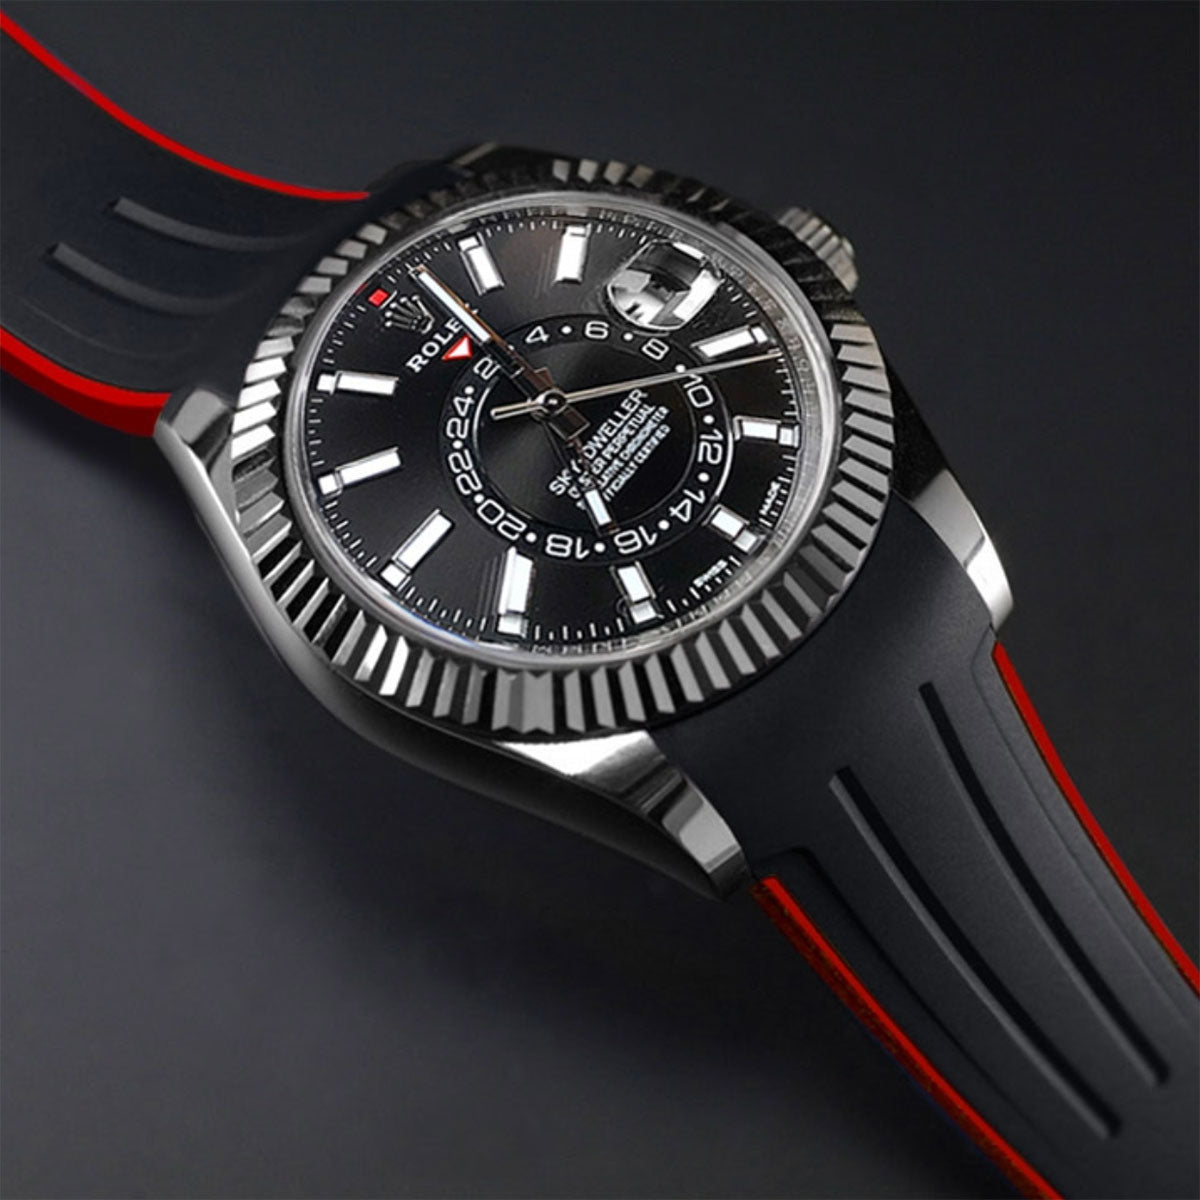 Rolex - Rubber B - Bracelet caoutchouc pour Sky-Dweller Oyster bracelet - watch band leather strap - ABP Concept -